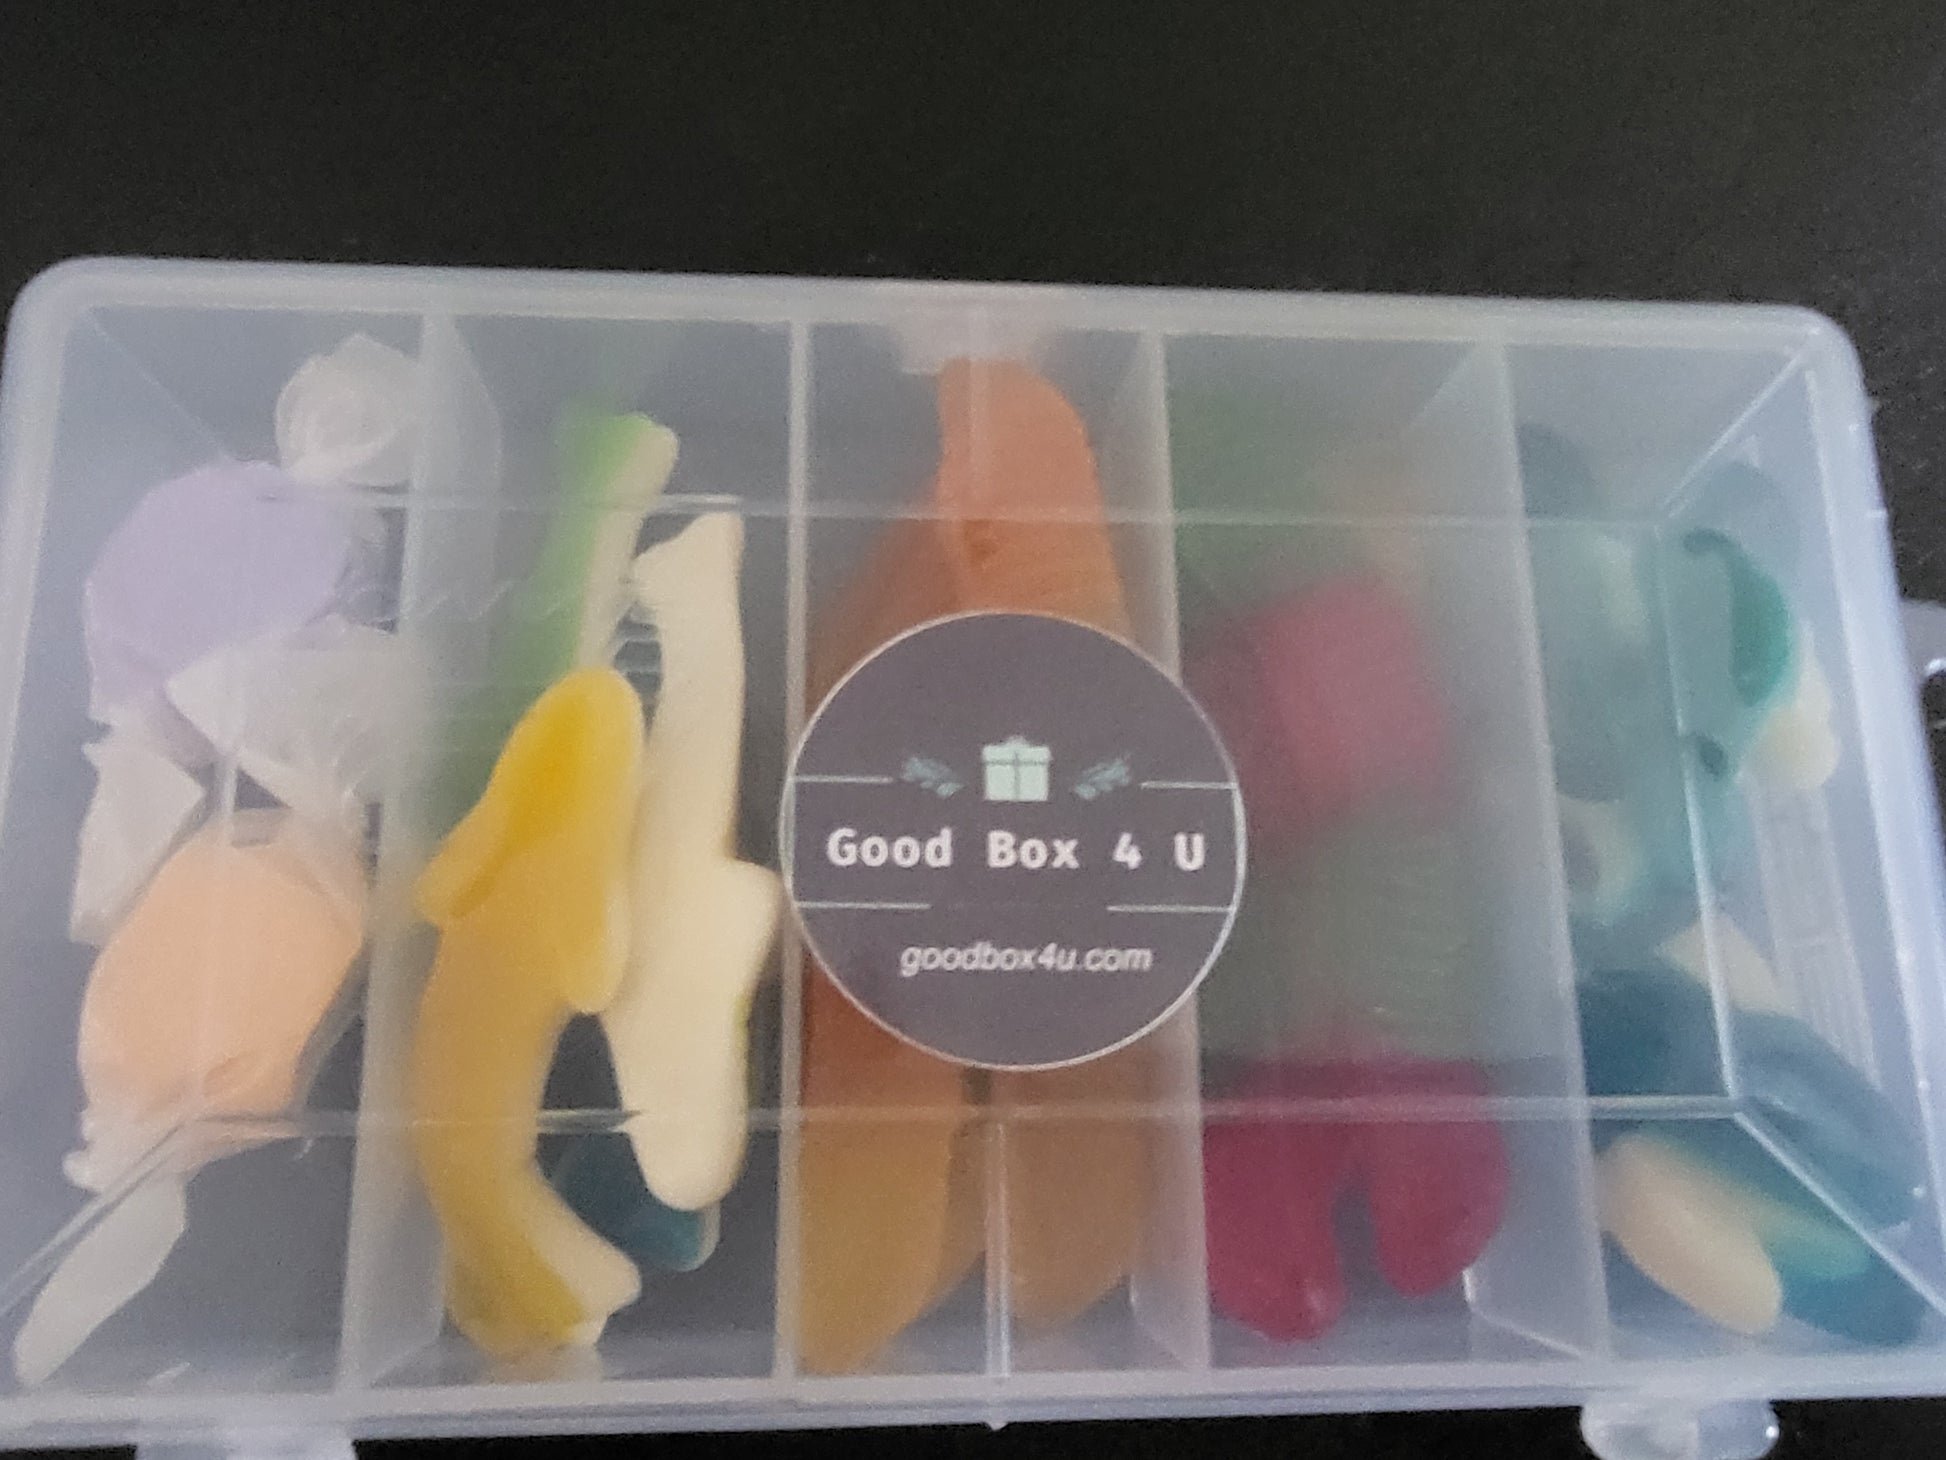 Tackle Box of Fun – Good Box 4 U